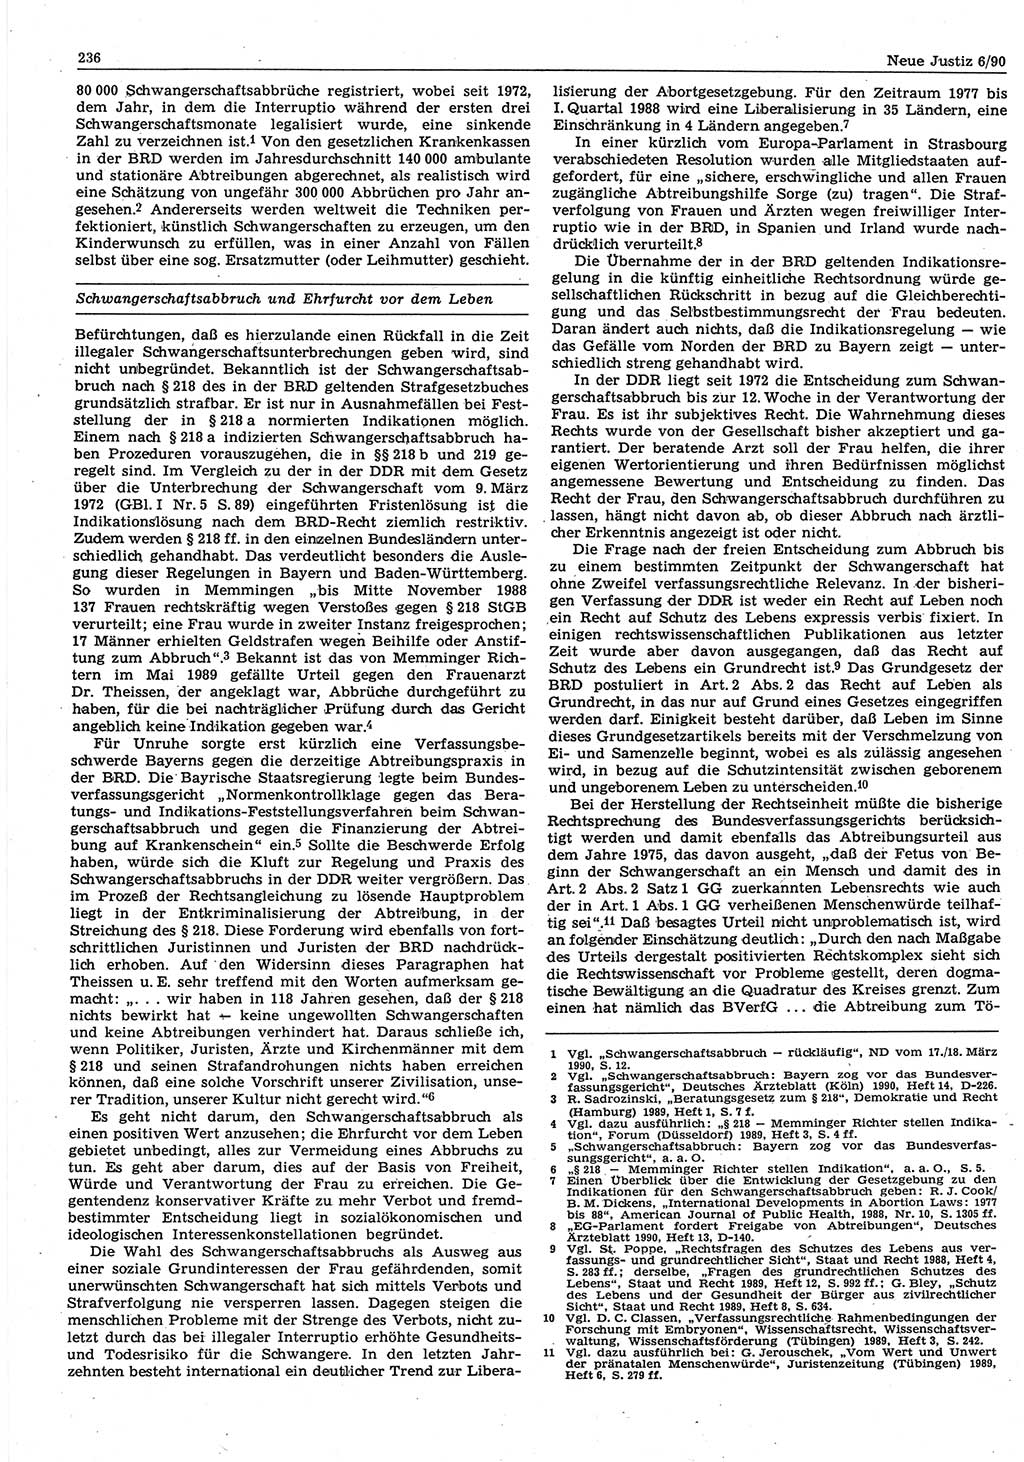 Neue Justiz (NJ), Zeitschrift für Rechtsetzung und Rechtsanwendung [Deutsche Demokratische Republik (DDR)], 44. Jahrgang 1990, Seite 236 (NJ DDR 1990, S. 236)